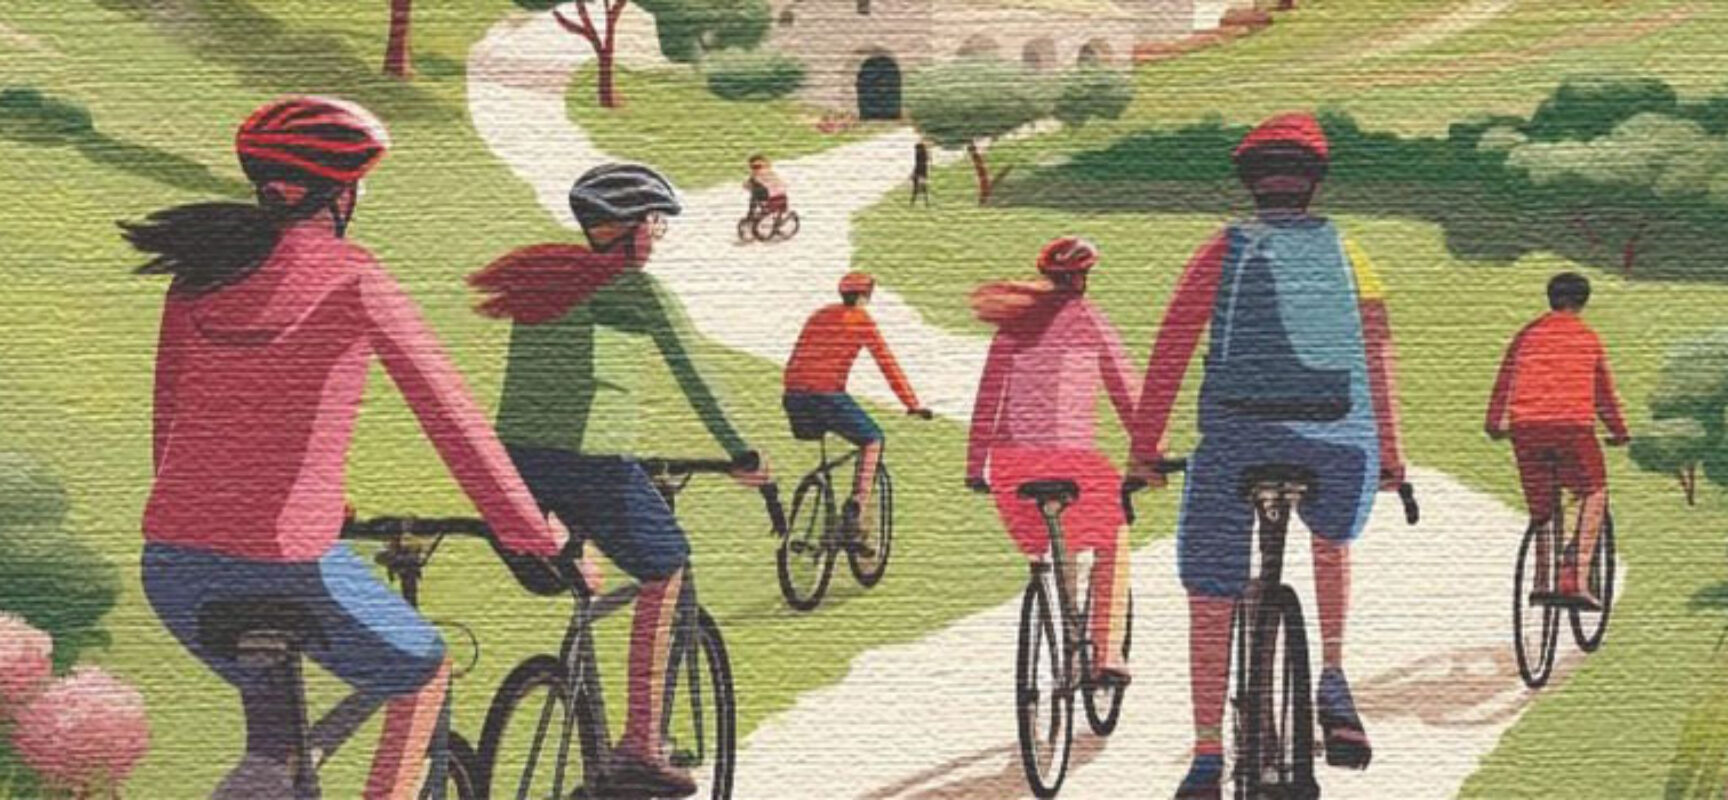 “Tra angoli e paesaggi” ciclopasseggiata guidata in bicicletta tra dolmen e casali